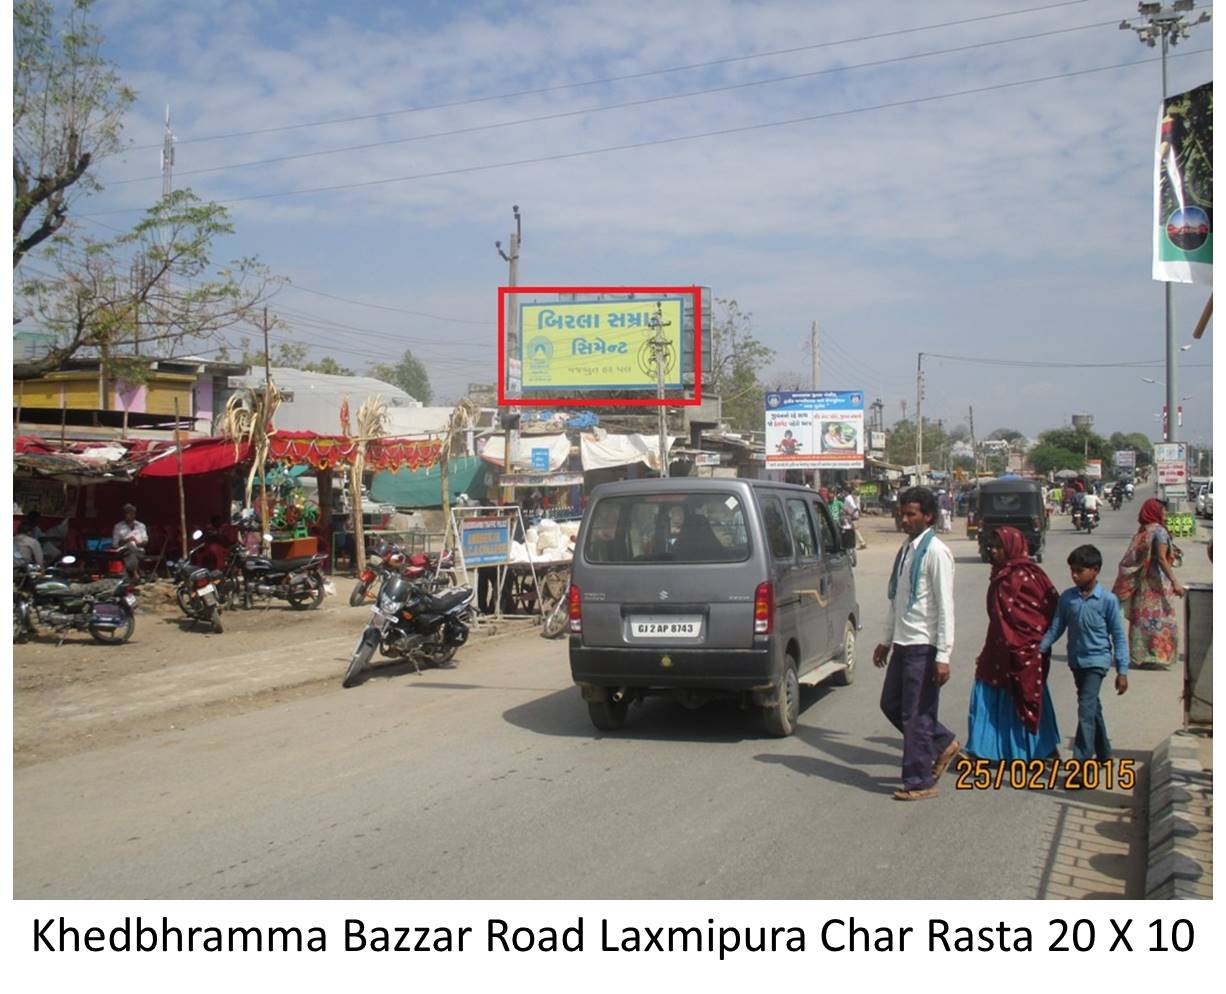 Bazzar Road Laxmipura Char Rasta, Khedbrahma